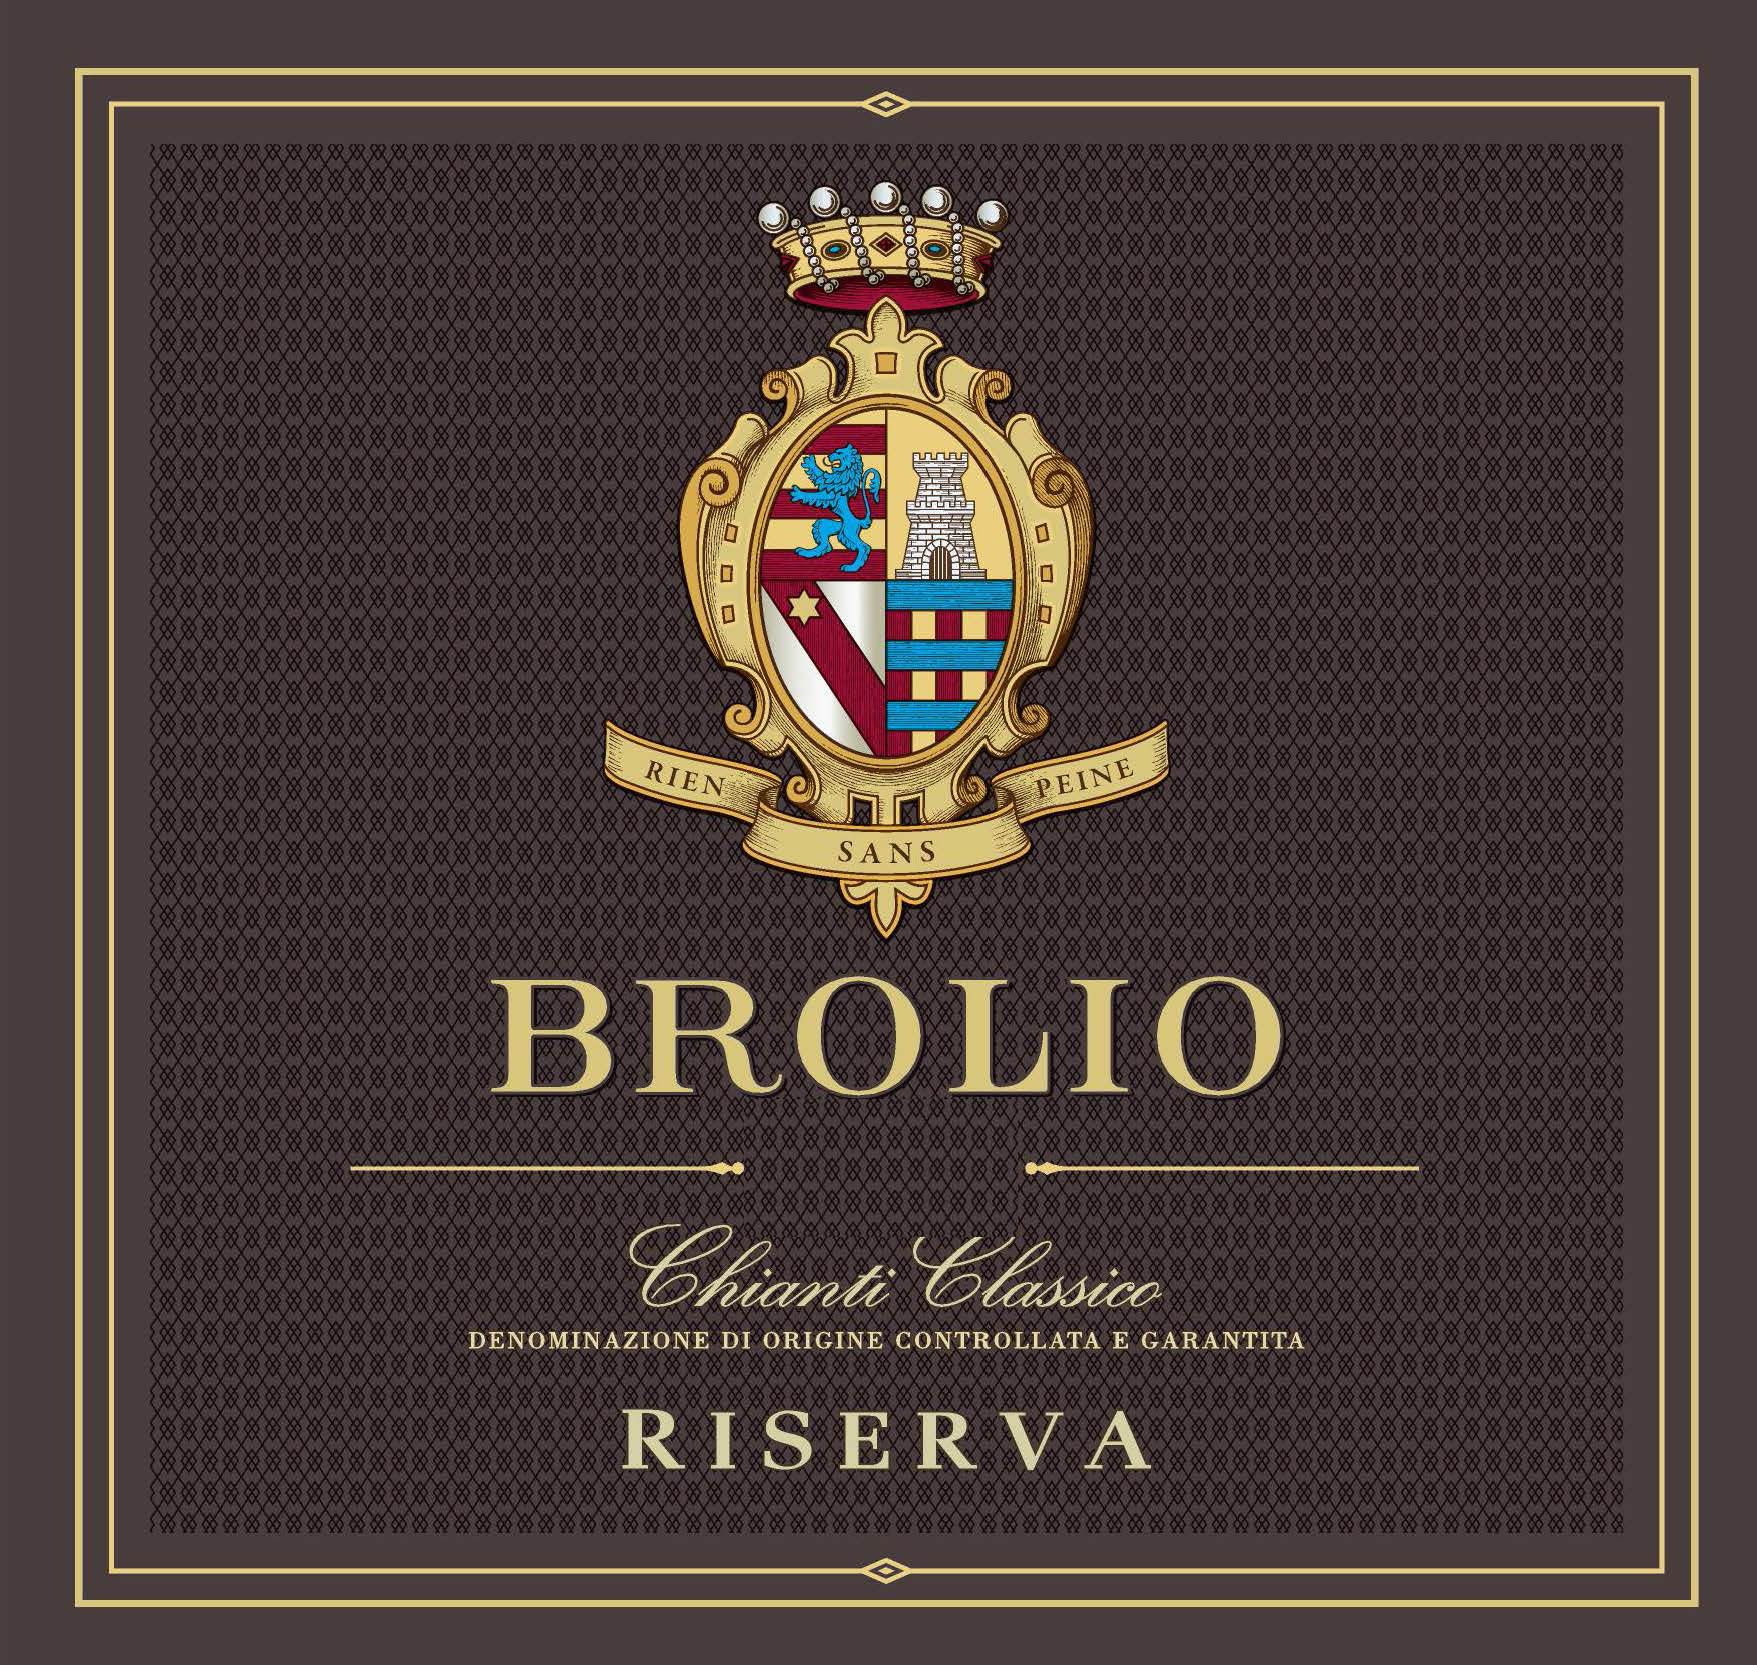 Barone Ricasoli - Brolio Chianti Classico Riserva DOCG label